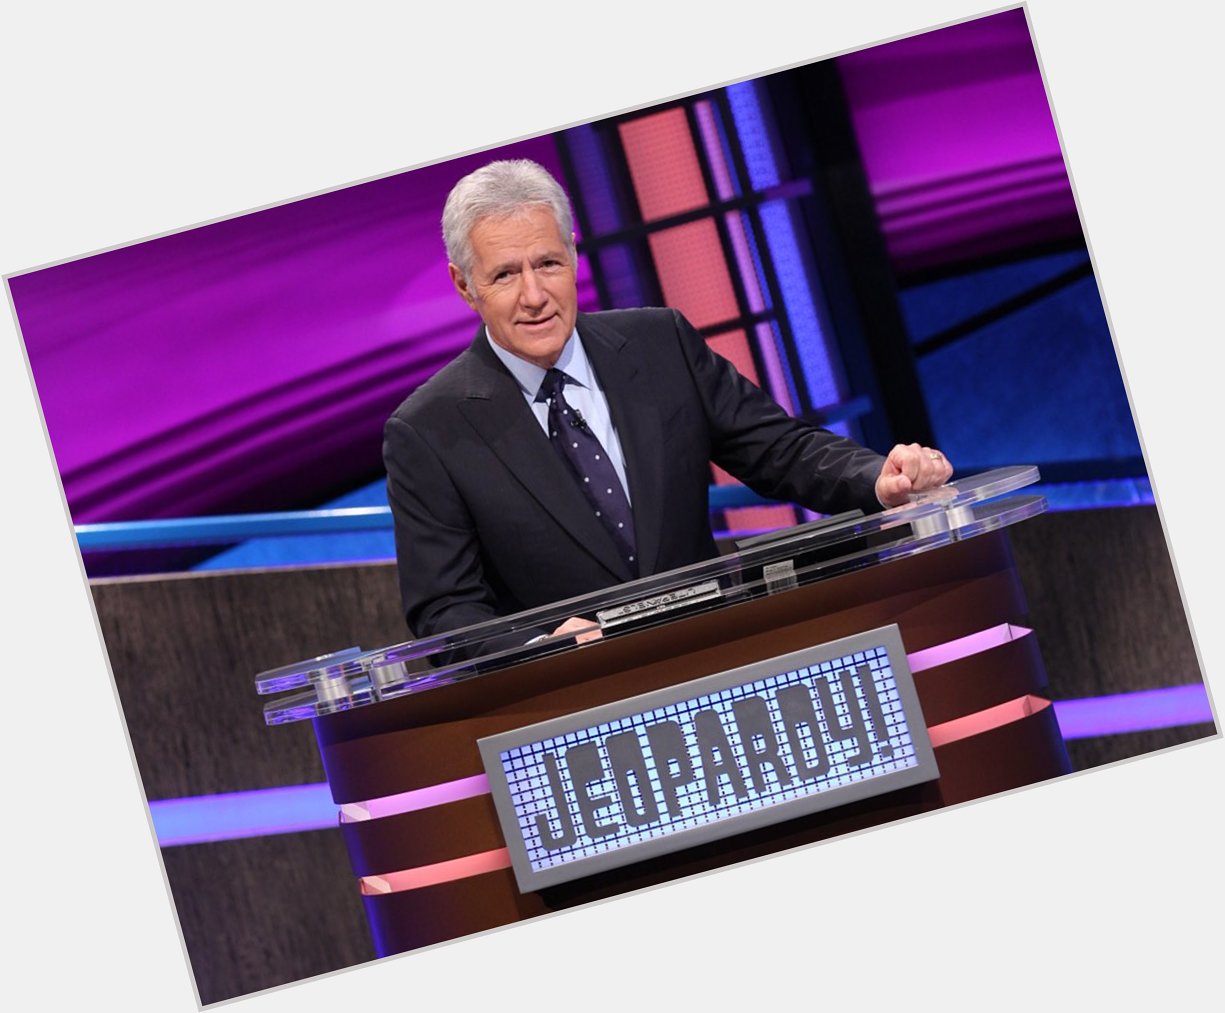 Happy 79th Birthday to Alex Trebek! The host of Jeopardy! 